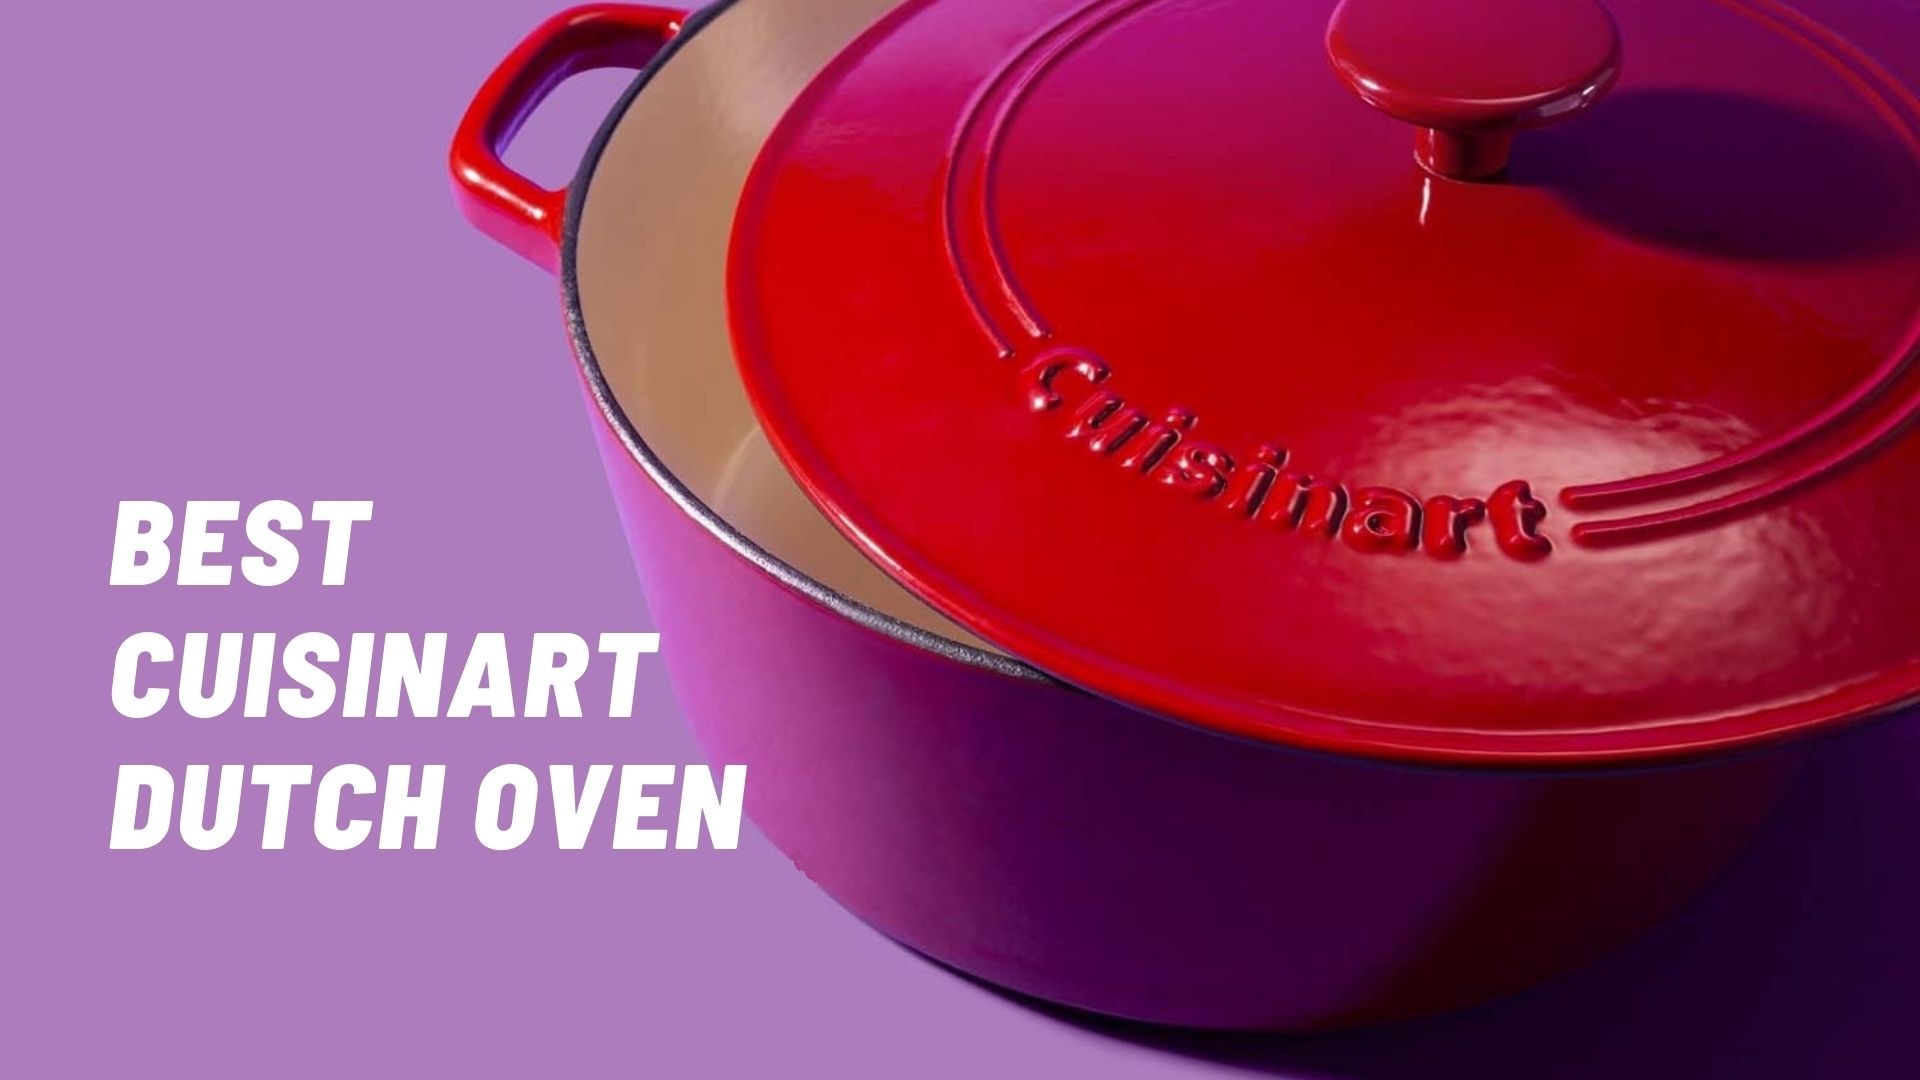 Best Cuisinart Dutch Oven